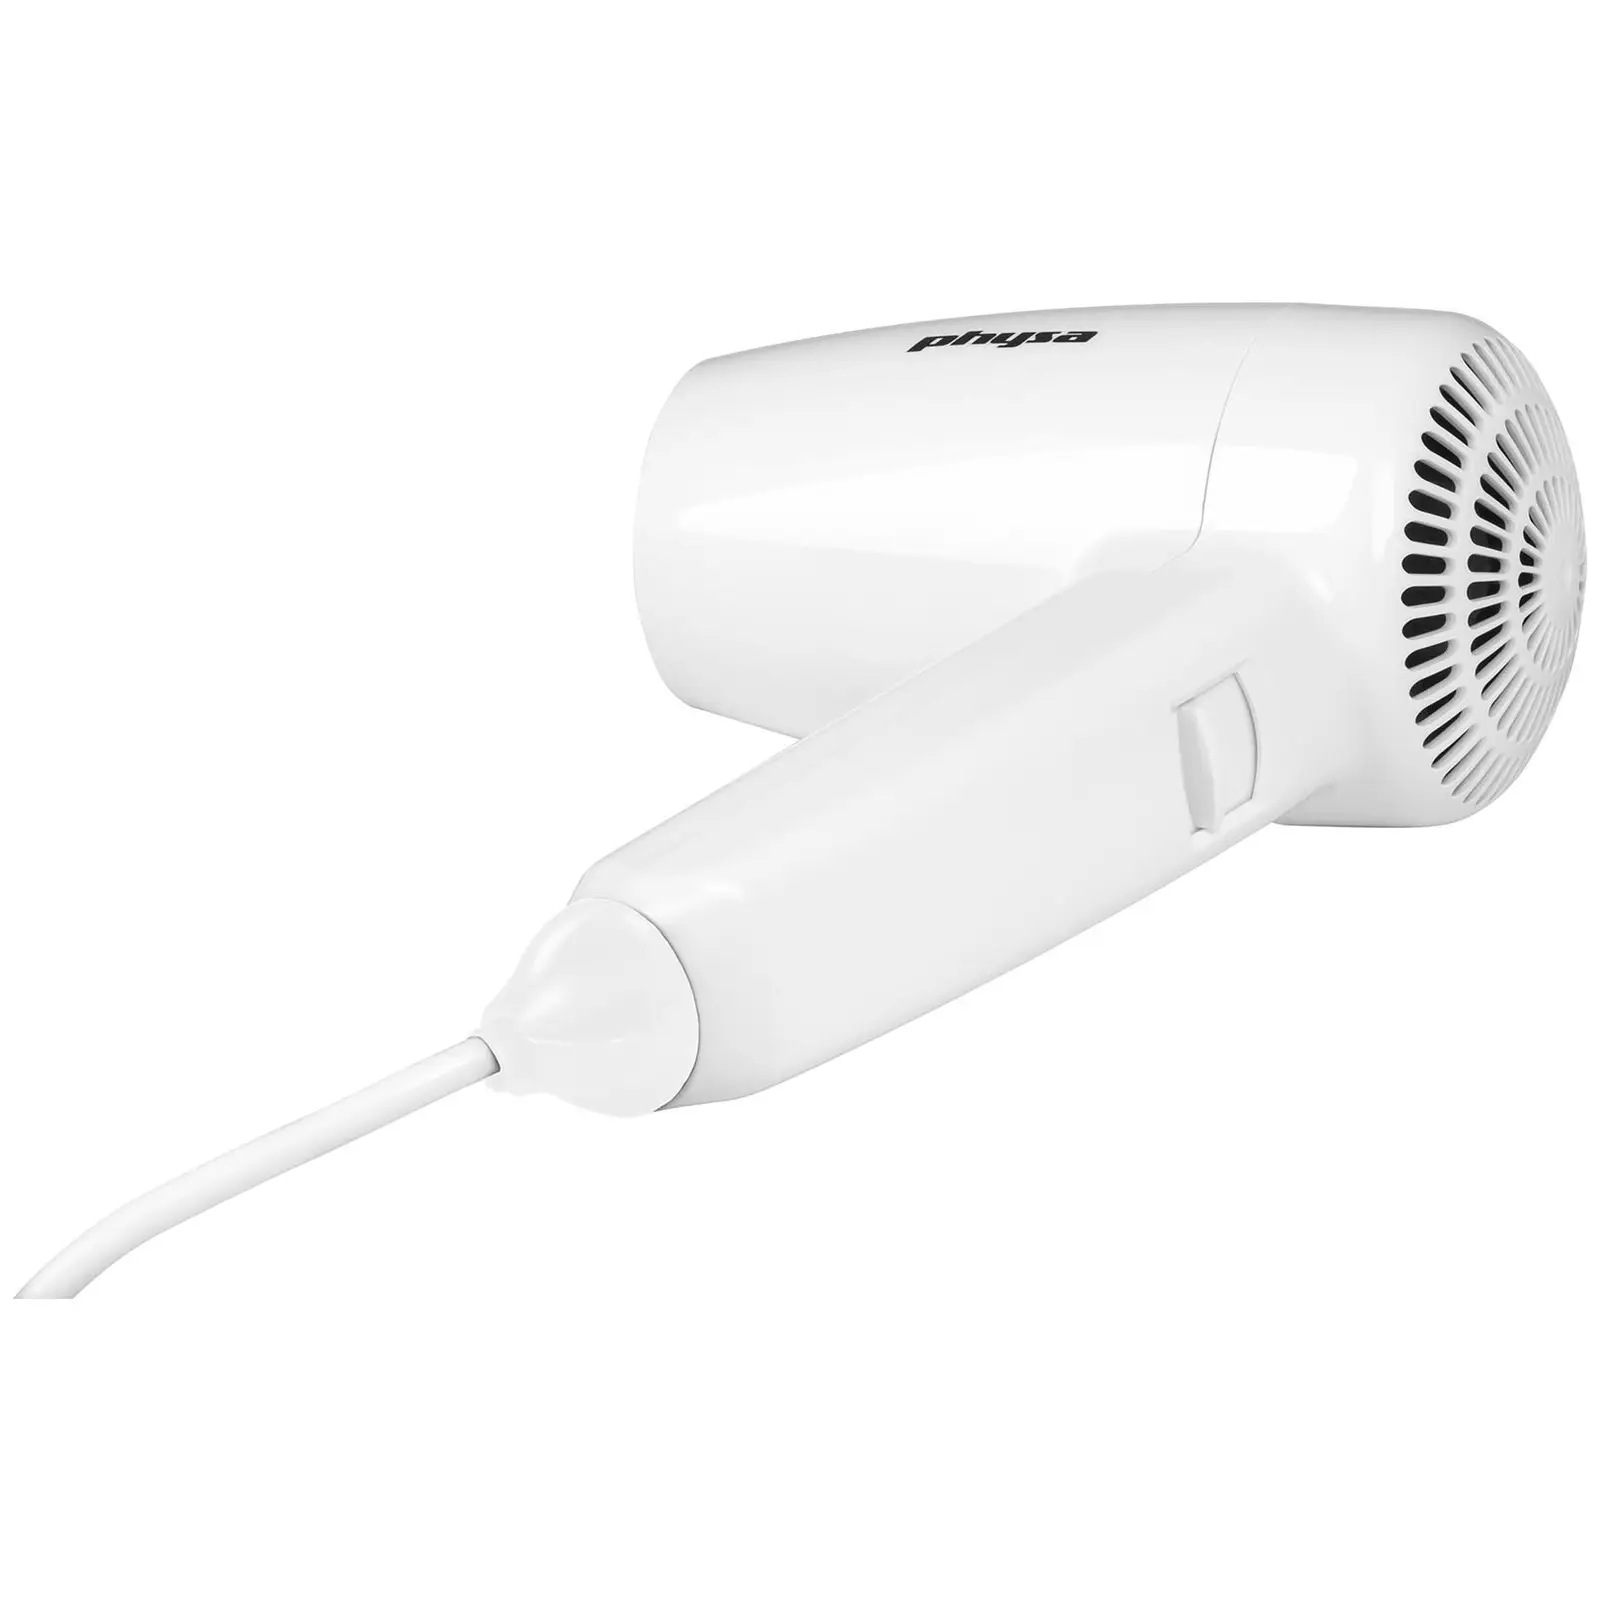 Hotel Hair Dryer - 1200 W - White